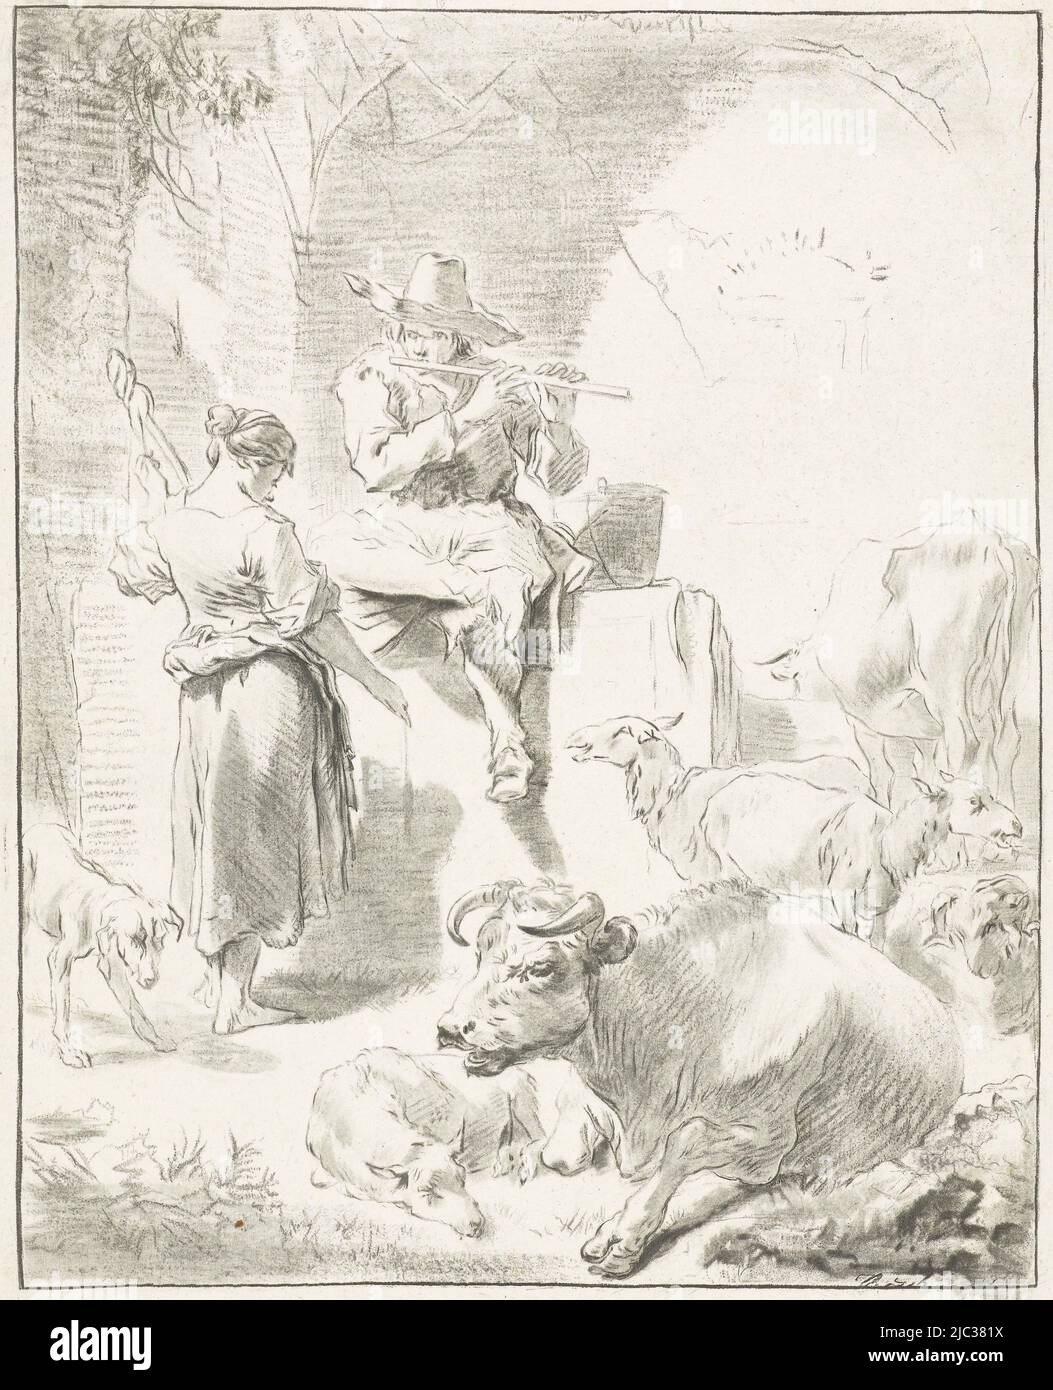 Un berger est assis sur un rocher et joue la flûte. À côté de lui est une purince de bergers. Les chèvres et les vaches se trouvent autour de la paire. Au-dessous de l'impression, un dessin au crayon d'un homme portant un chapeau, Flûte à jouer au berger et à la filature, dessinateur: Jurriaan Cootwijck, dessinateur intermédiaire: Nicolaes Pietersz. Berchem, Amsterdam, 1724 - 1798, papier, L 212 mm × h 296 mm Banque D'Images